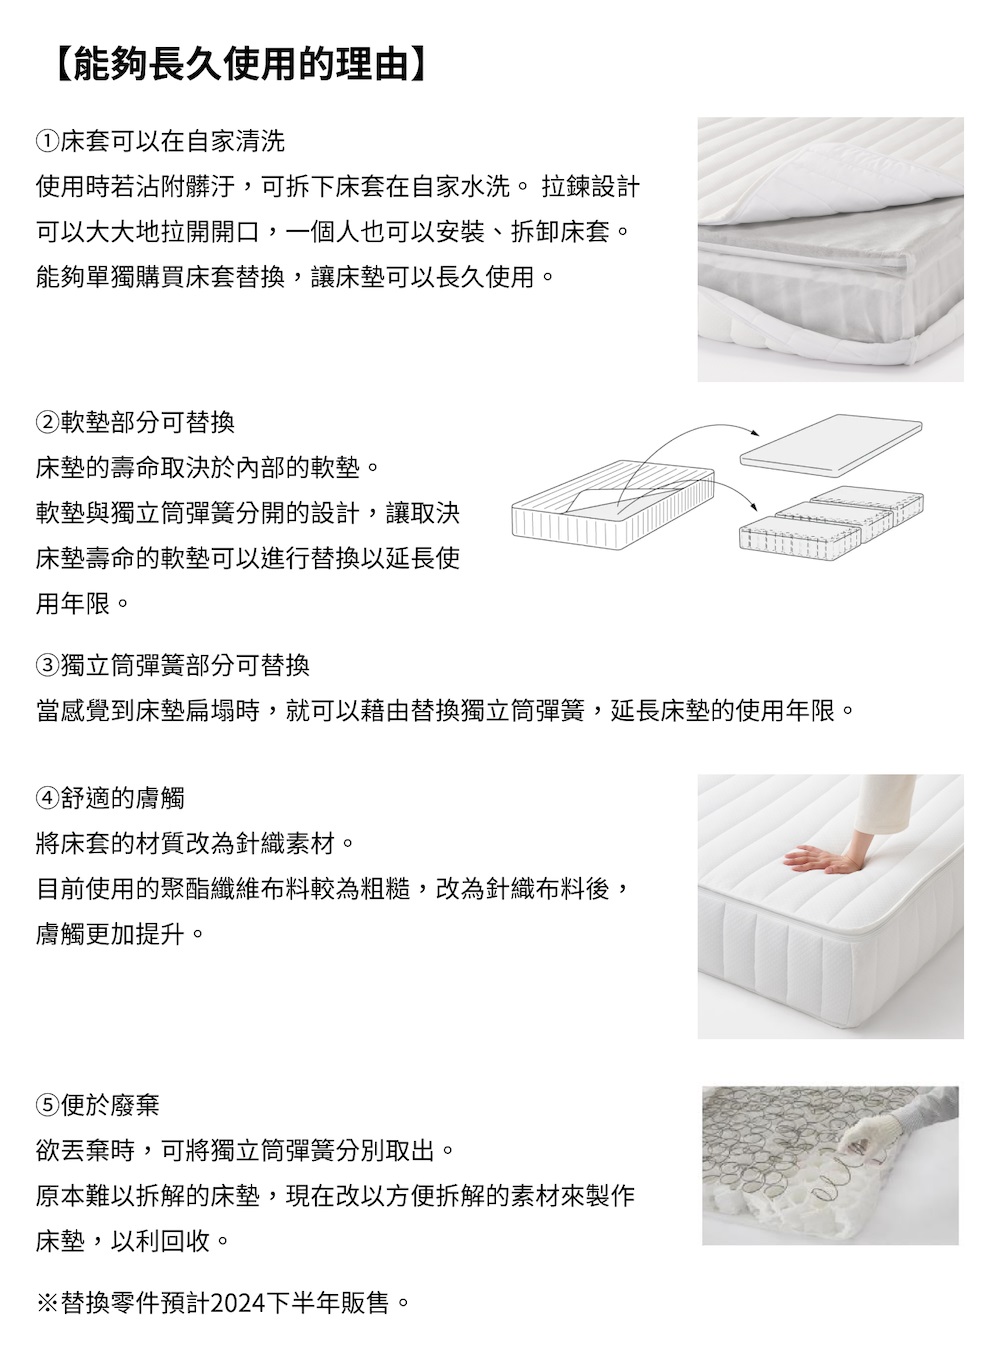 MUJI 無印良品 高密度獨立筒翻身型床墊/SD 約寬122